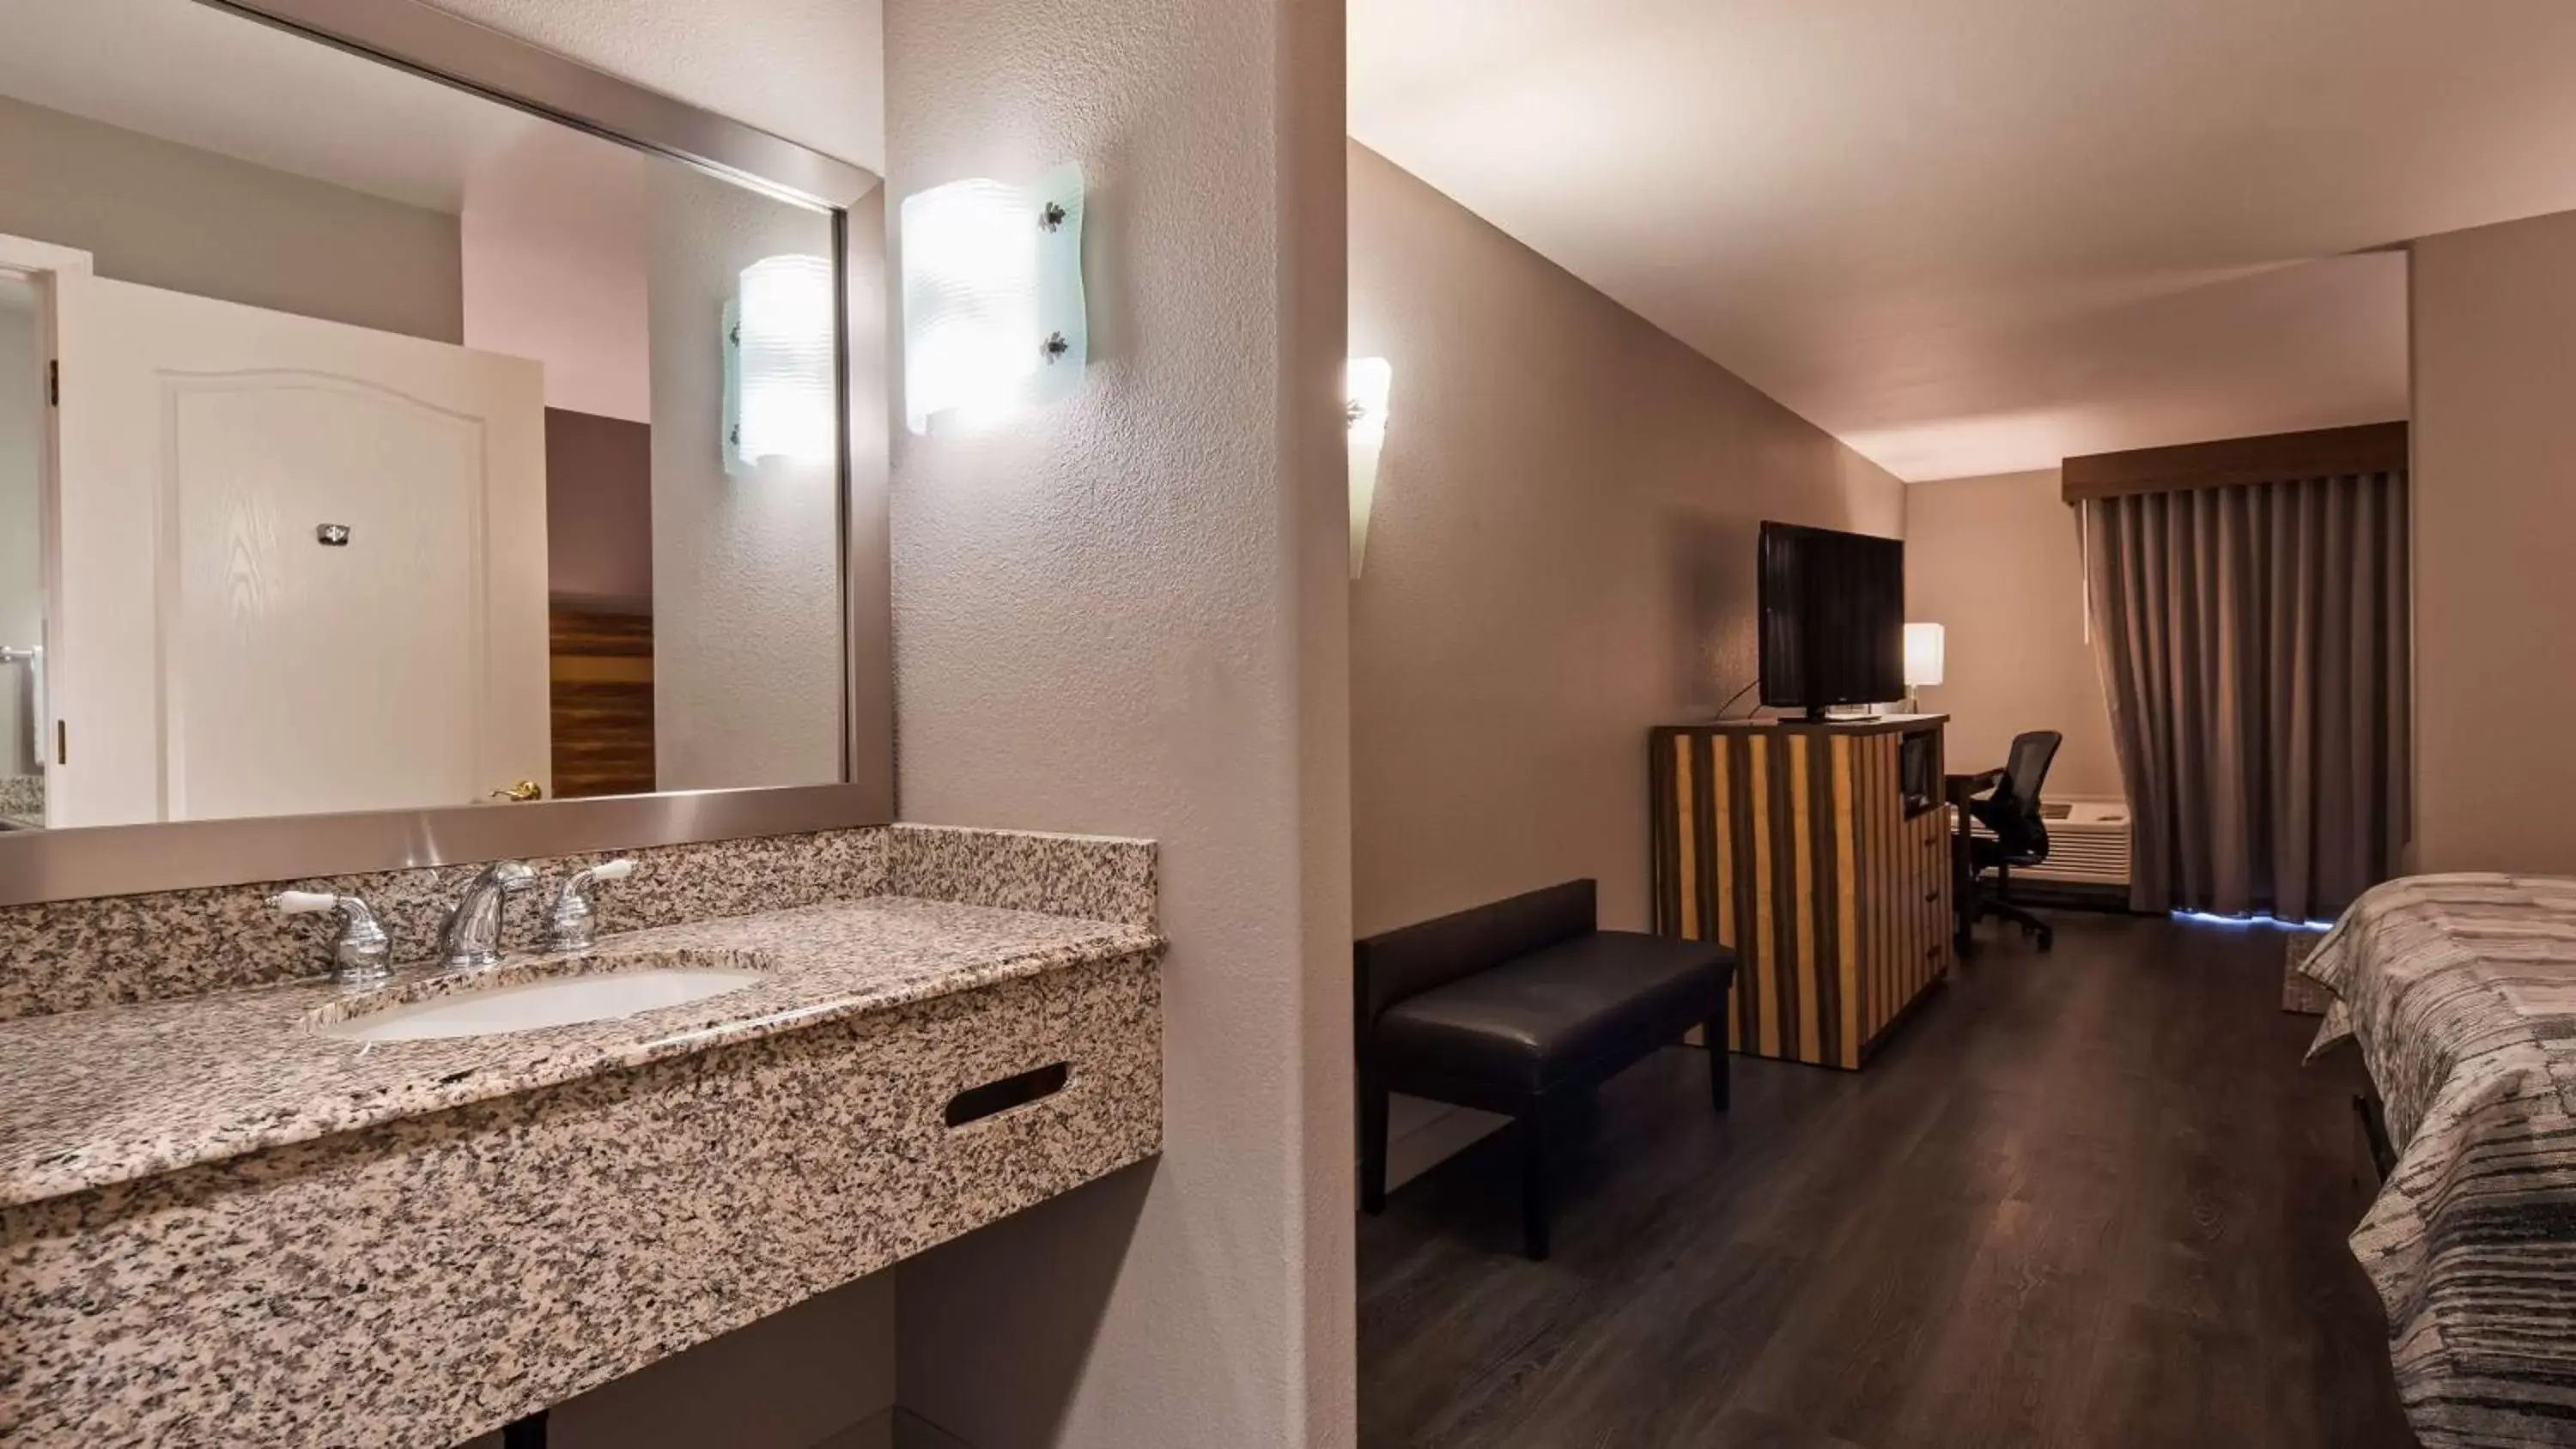 Photo of the whole room, Bathroom in Best Western Cedar Inn & Suites